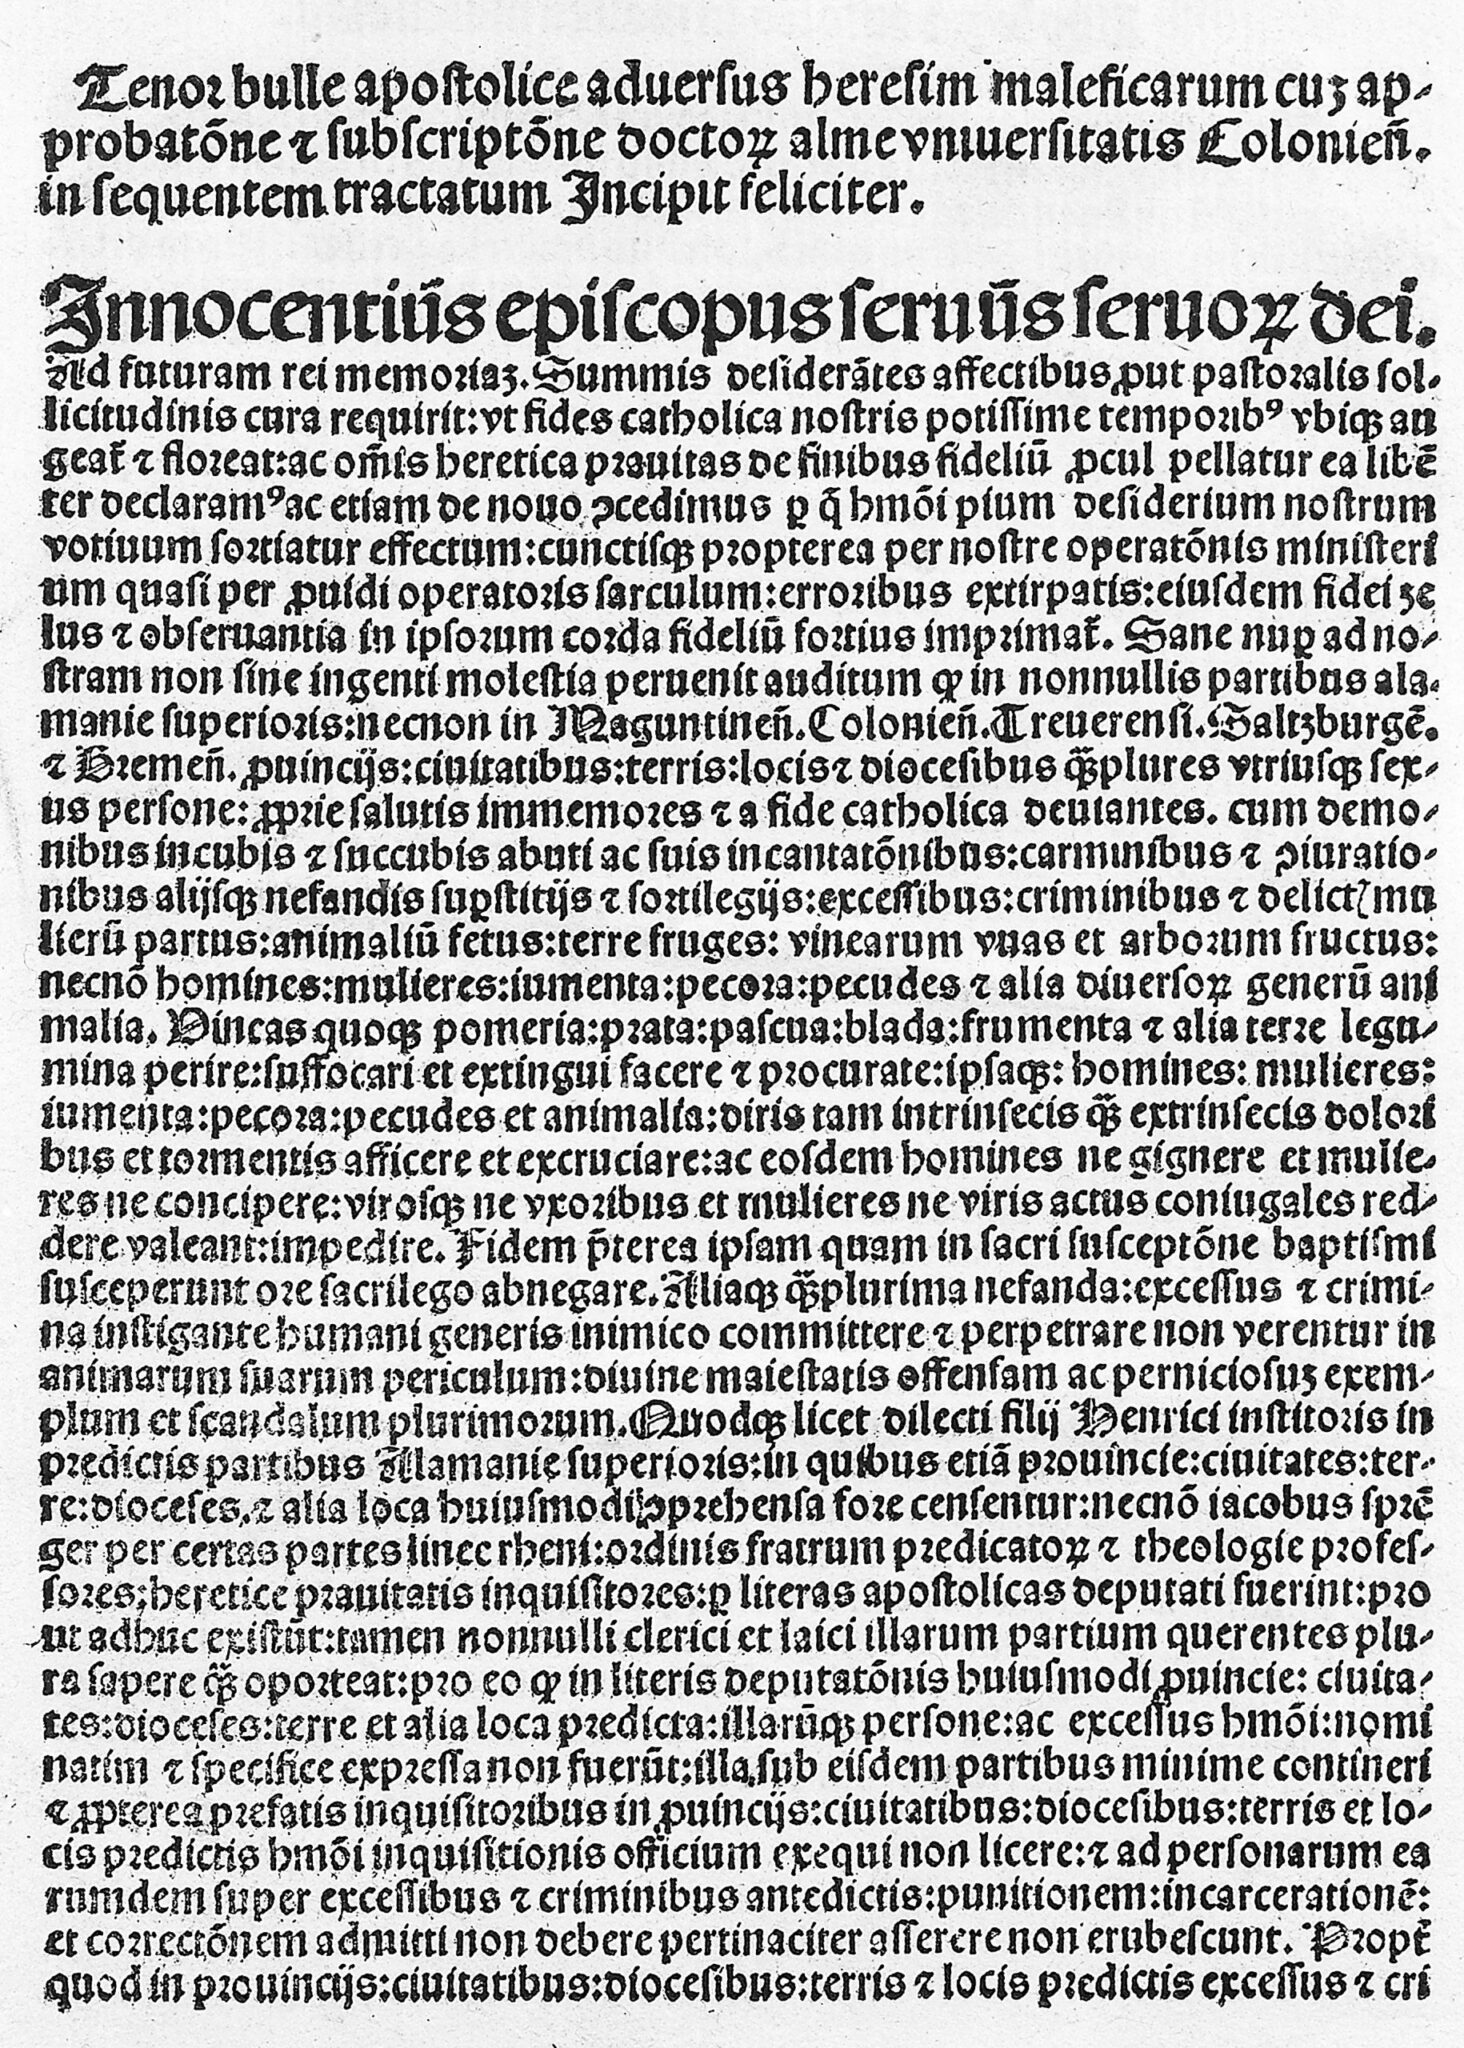 Malleus Maleficarum, début de la bulle d'Innocent VIII | Creative Commons BY 4.0